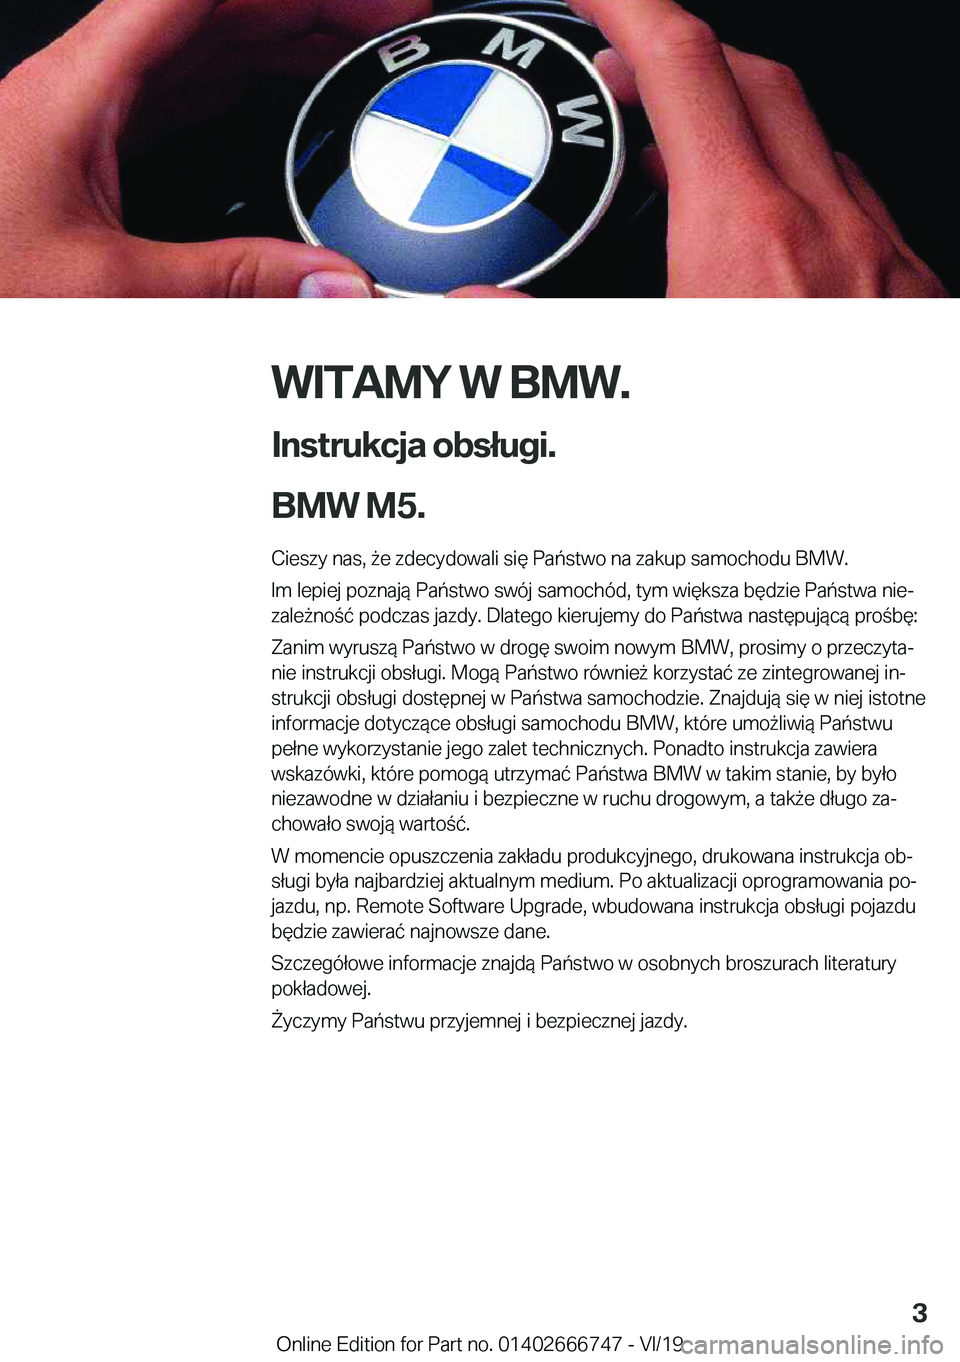 BMW M5 2020  Instrukcja obsługi (in Polish) �W�I�T�A�M�Y��W��B�M�W�.
�I�n�s�t�r�u�k�c�j�a��o�b�s�ł�u�g�i�.
�B�M�W��M�5�. �C�i�e�s�z�y��n�a�s�,�9�e��z�d�e�c�y�d�o�w�a�l�i��s�i�